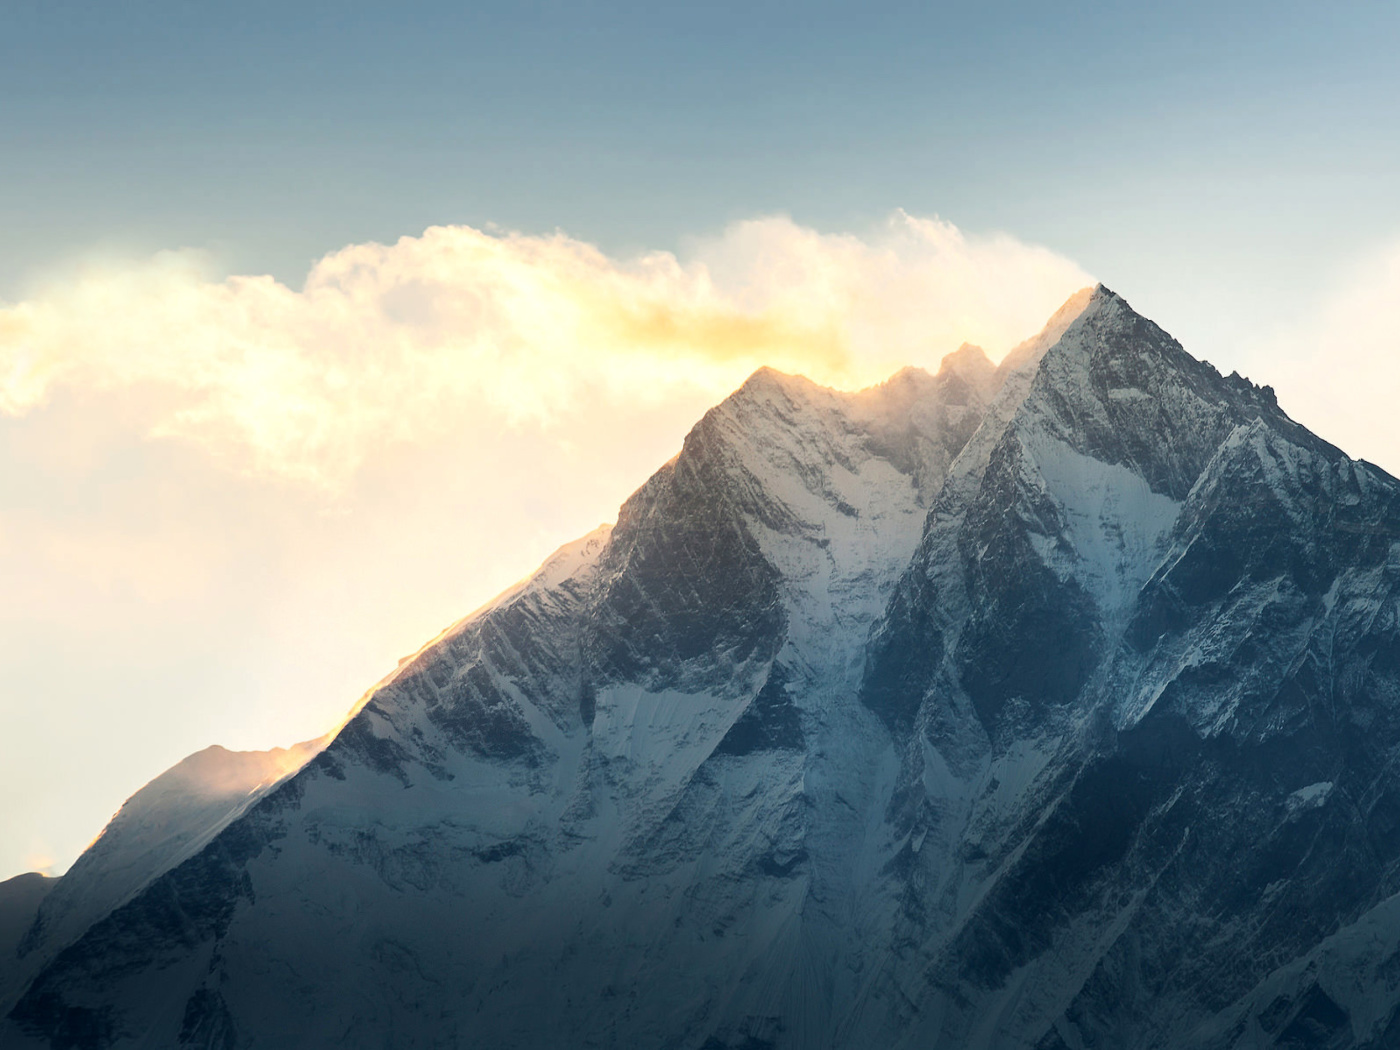 Обои Everest in Nepal 1400x1050